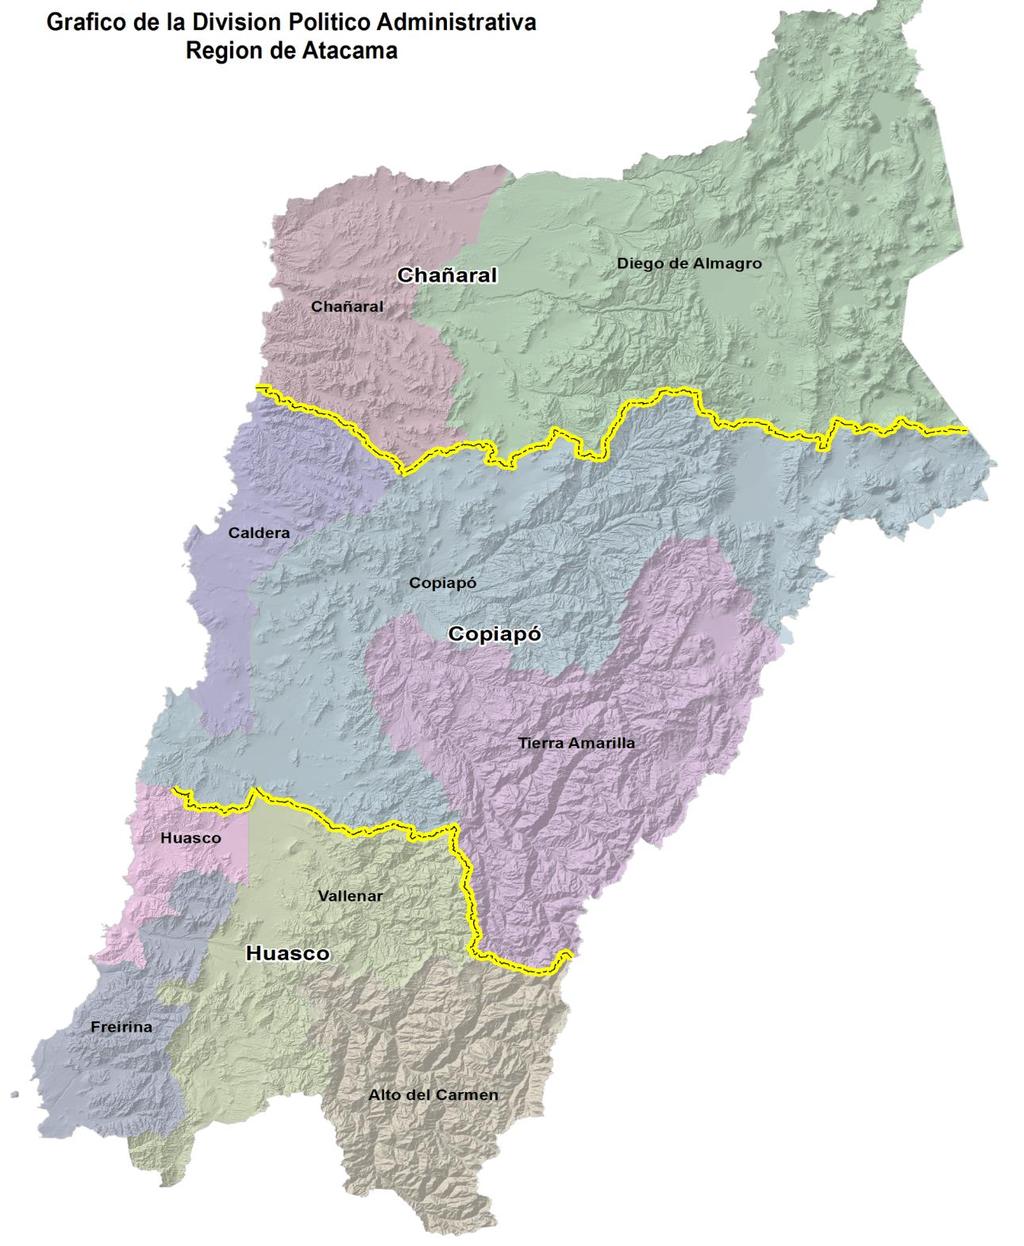 Figura 1. Territorios de Planificación, Región de Atacama. Fuente: Gobierno Regional de Atacama, División de Planificación y Desarrollo.